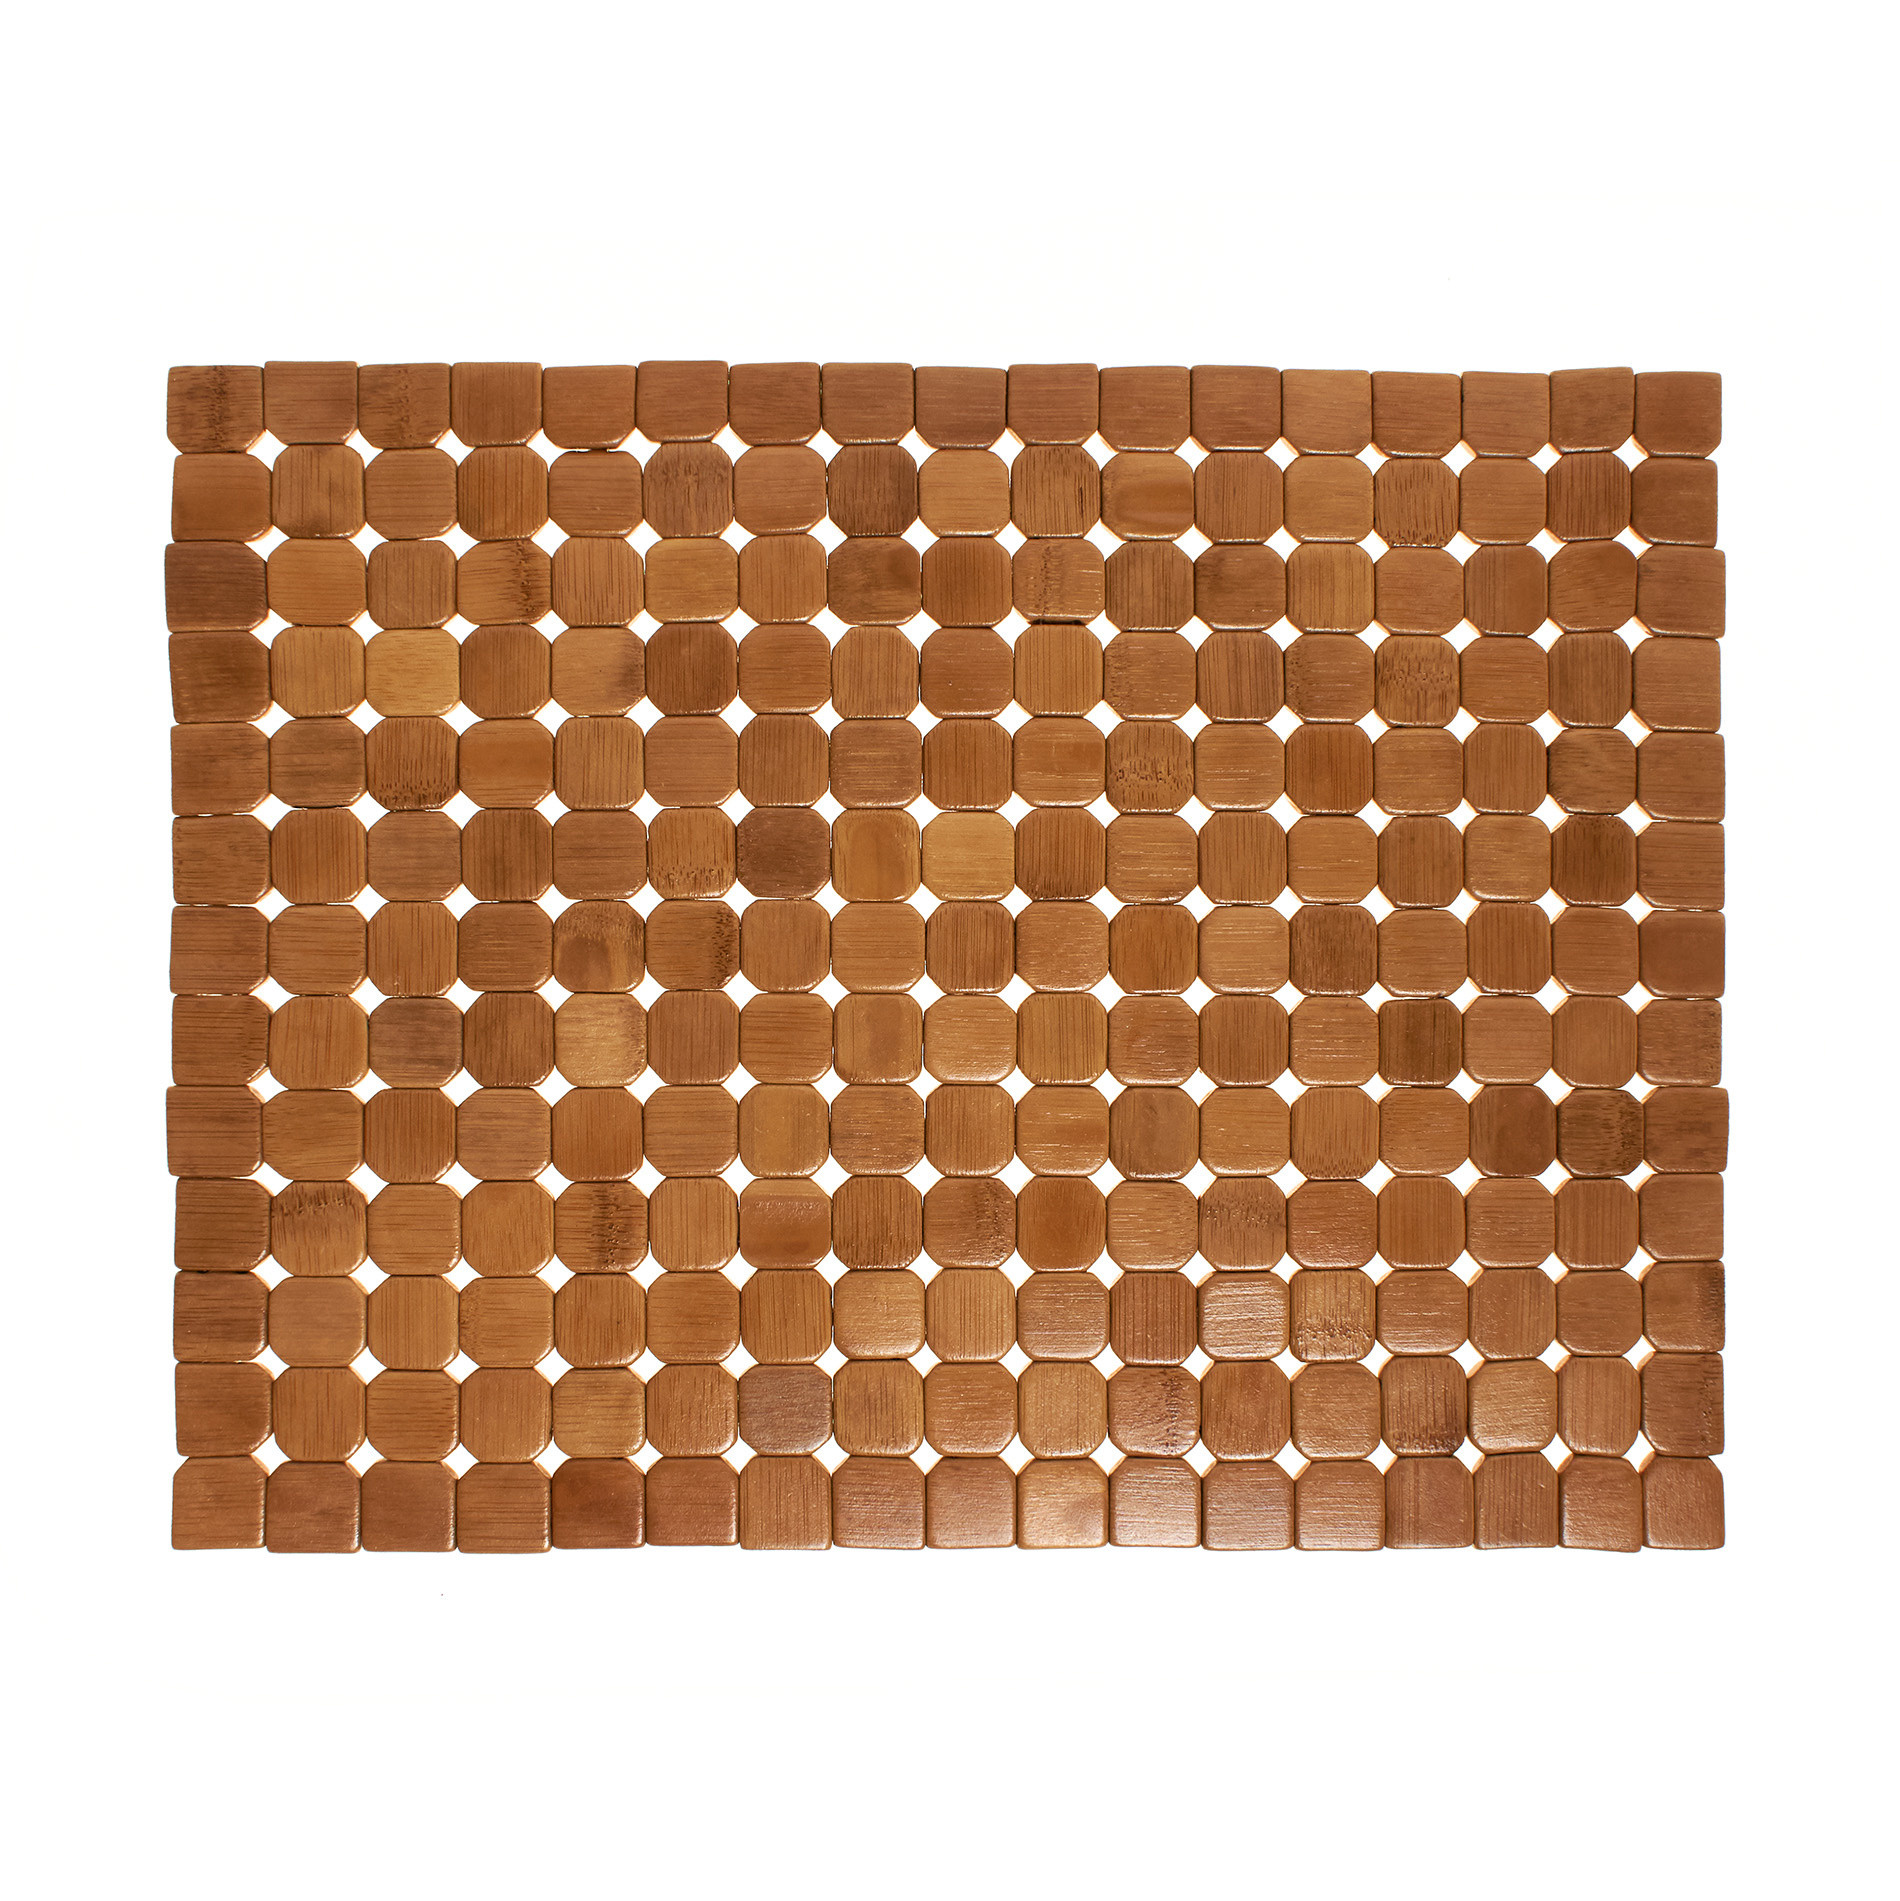 Расписной бамбуковый коврик для столовых приборов Coincasa, светло-коричневый подставка для столовых приборов каменная роза